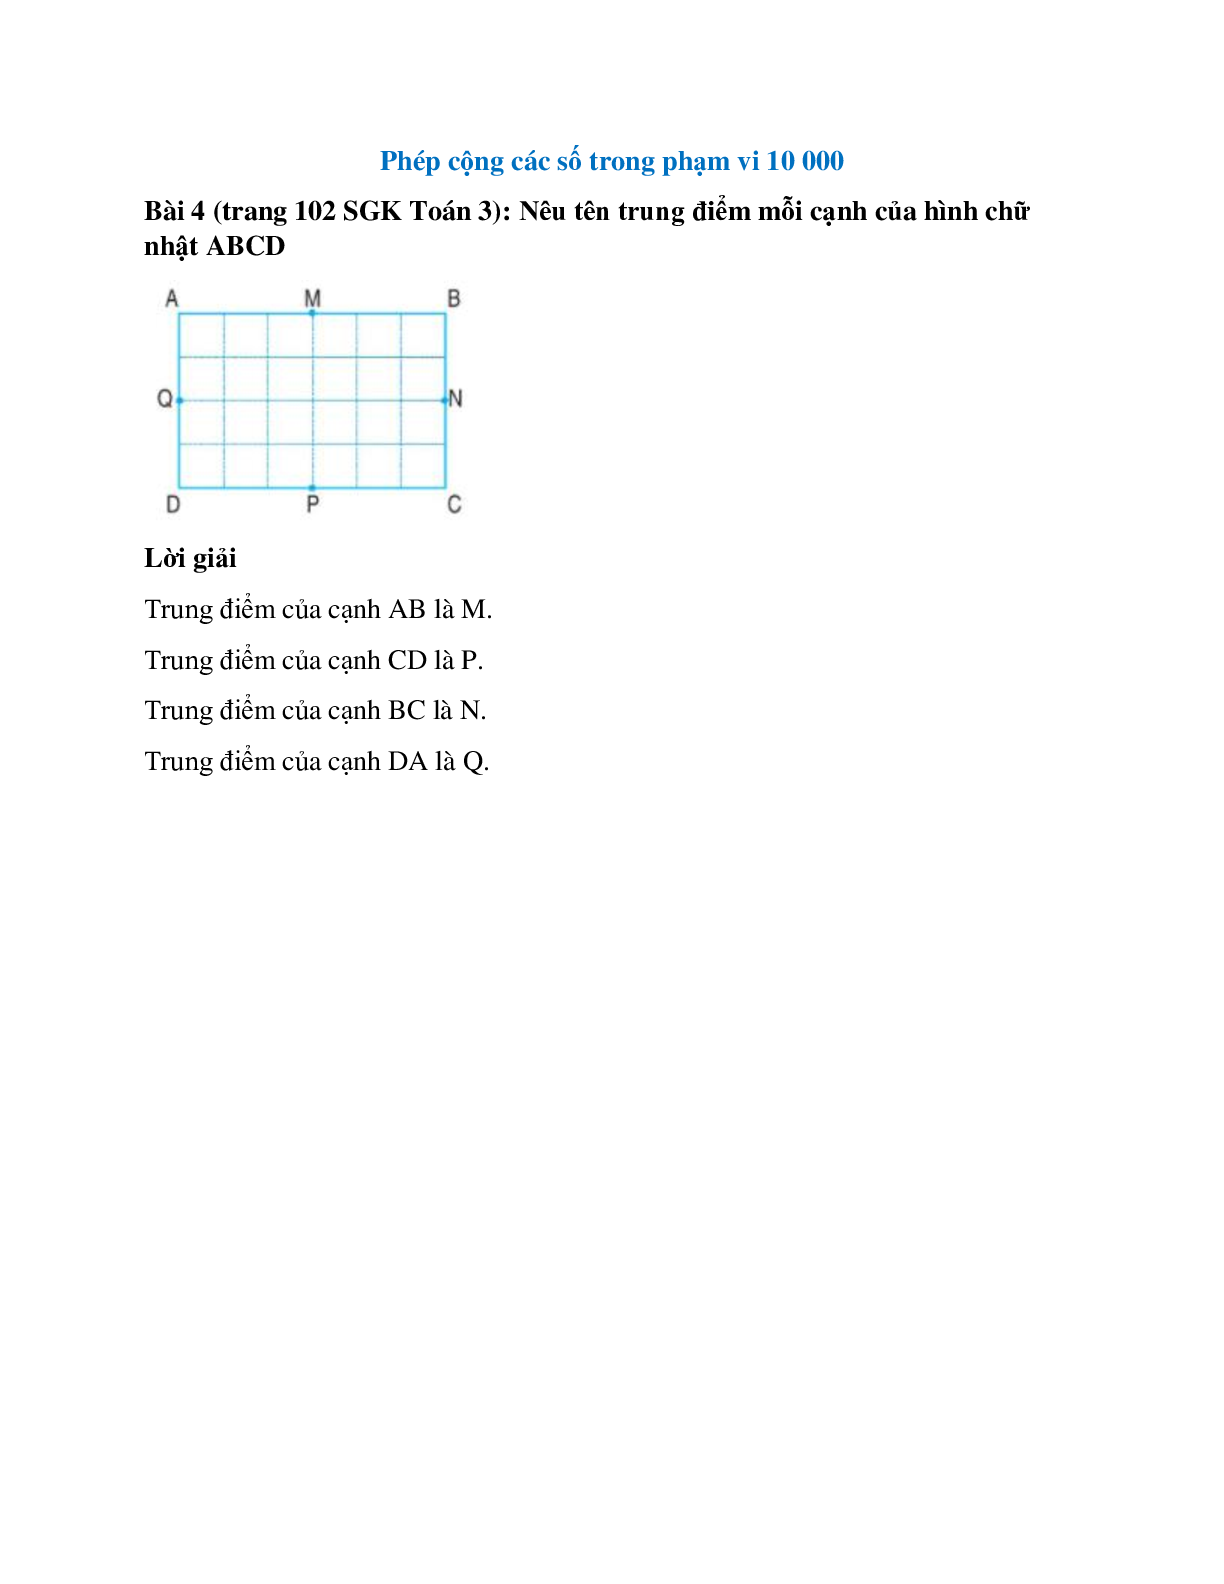 Nêu tên trung điểm mỗi cạnh của hình chữ nhật ABCD (trang 1)